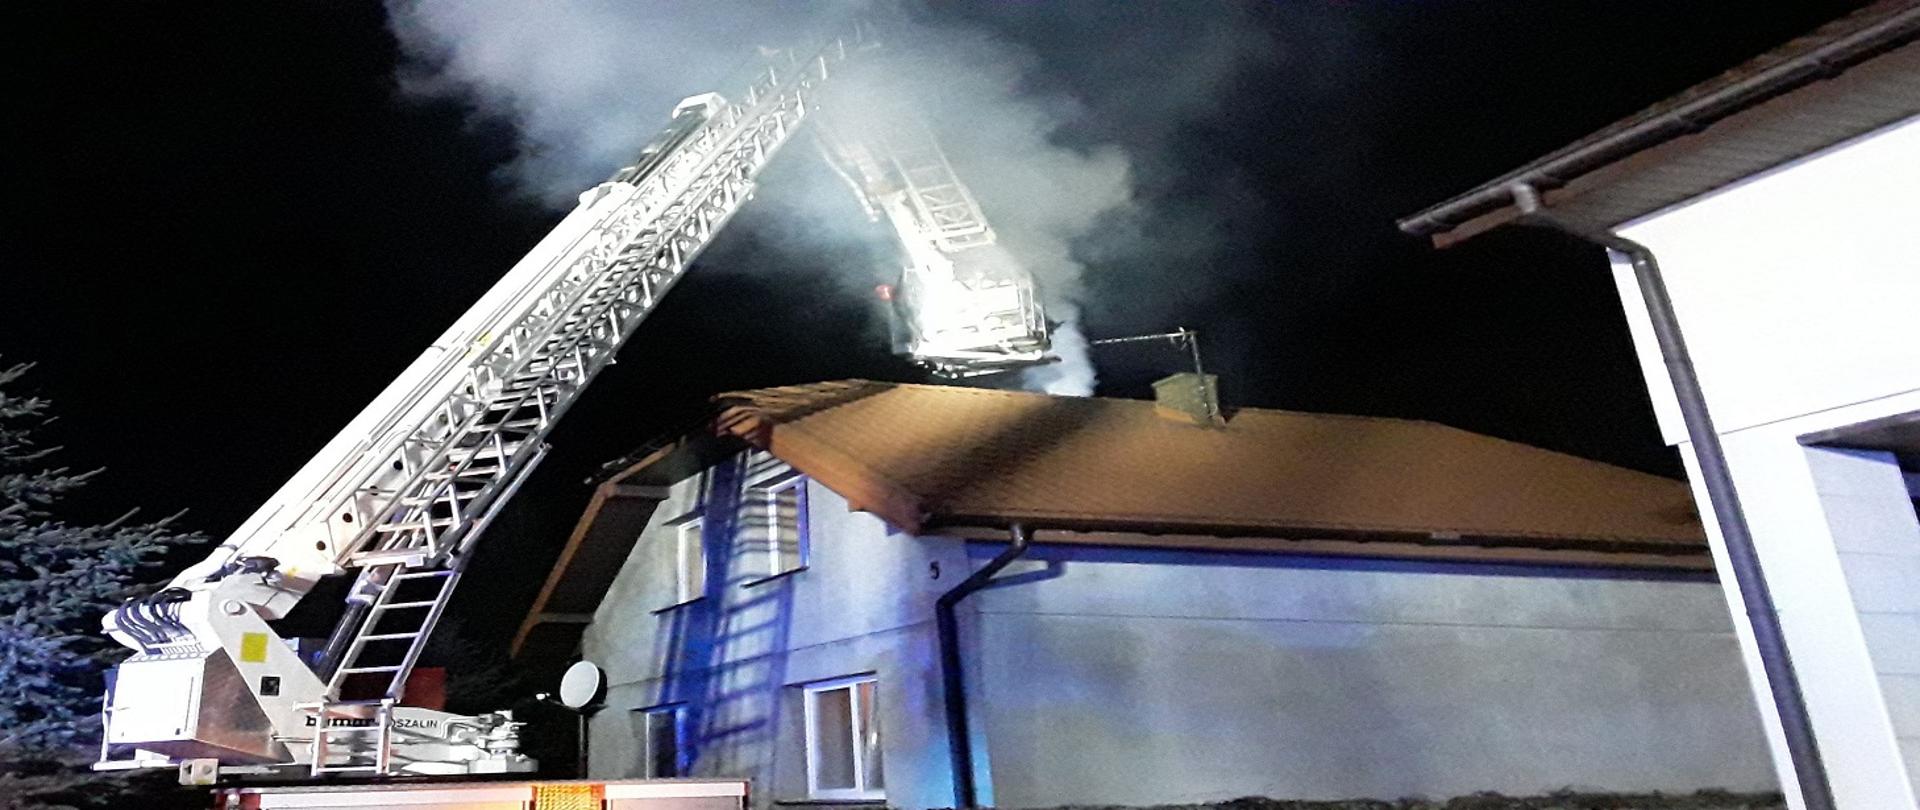 zdjęcie przedstawia pożar sadzy w kominie w budynku mieszkalnym jednorodzinnym, na pierwszym planie znajduje się podnośnik hydrauliczny strażacki 